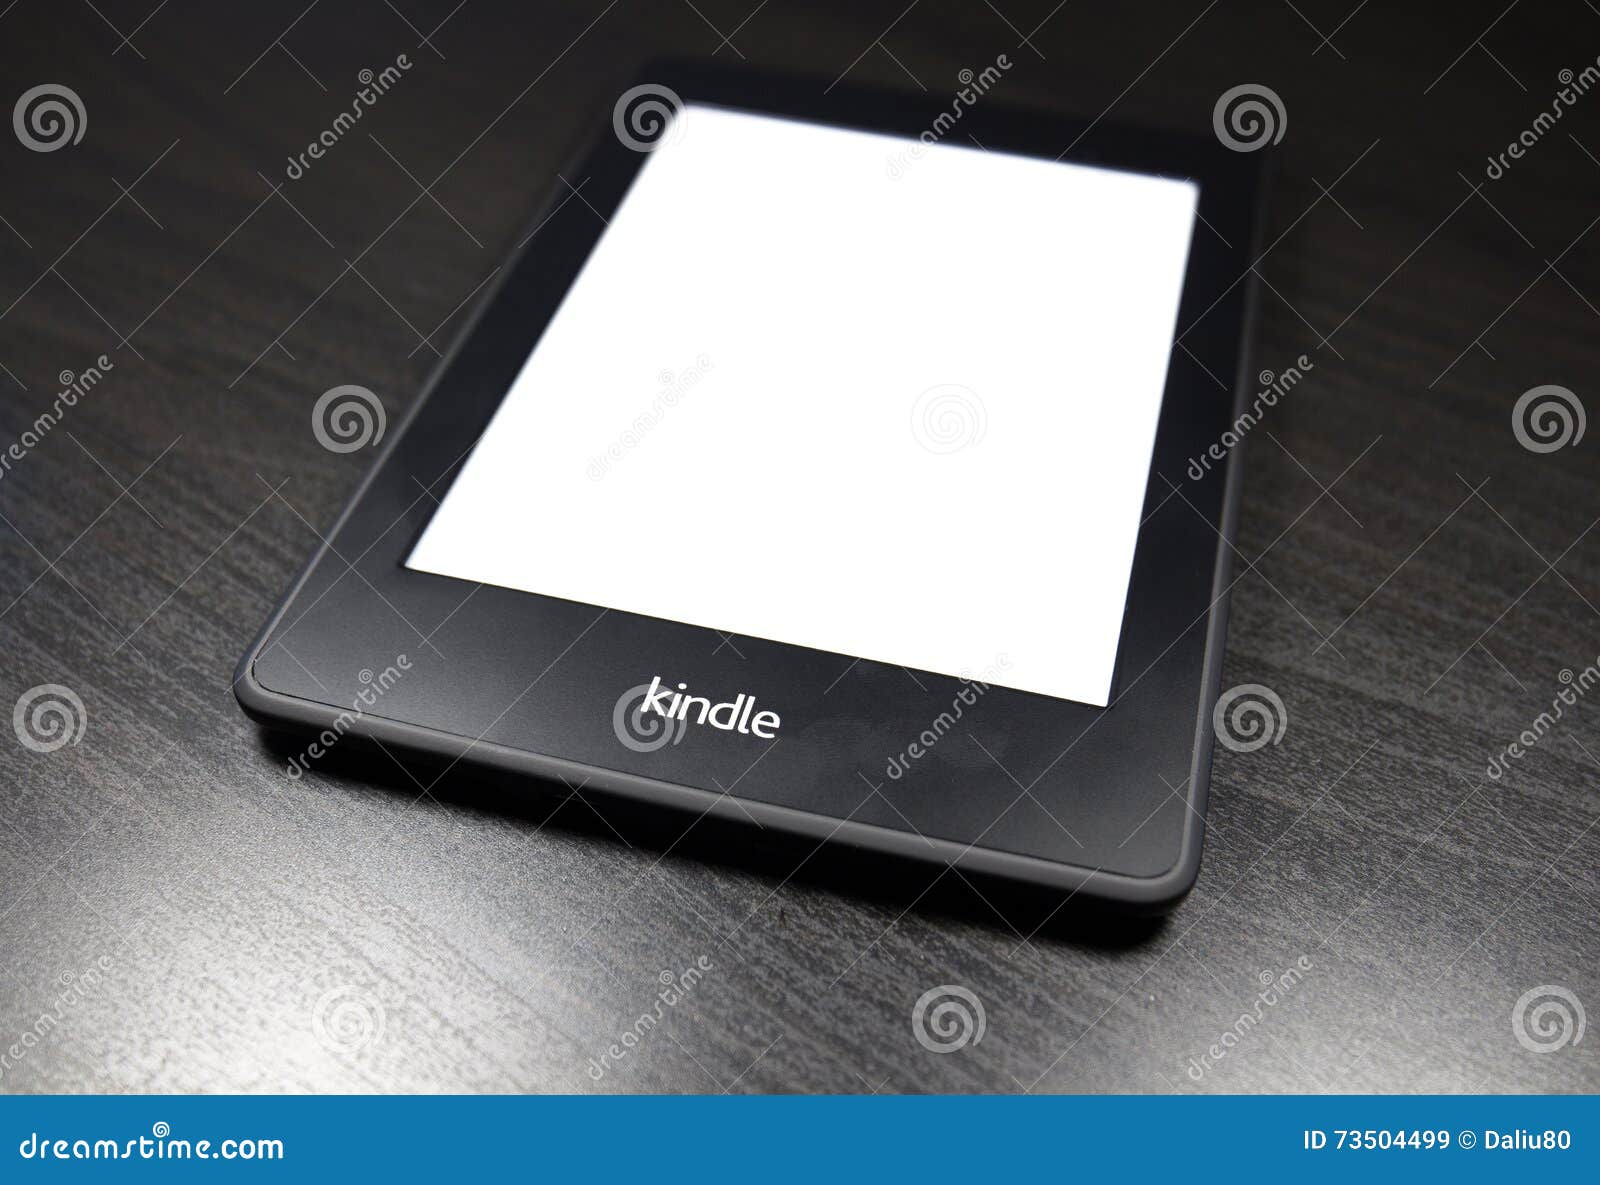 Kindle 4 là một thiết bị đọc sách lý tưởng và sang trọng cho những người yêu thích đọc sách. Đặc biệt, khi được thể hiện trên nền màu đen, thiết bị trở nên đẹp hơn và thu hút mọi ánh nhìn.